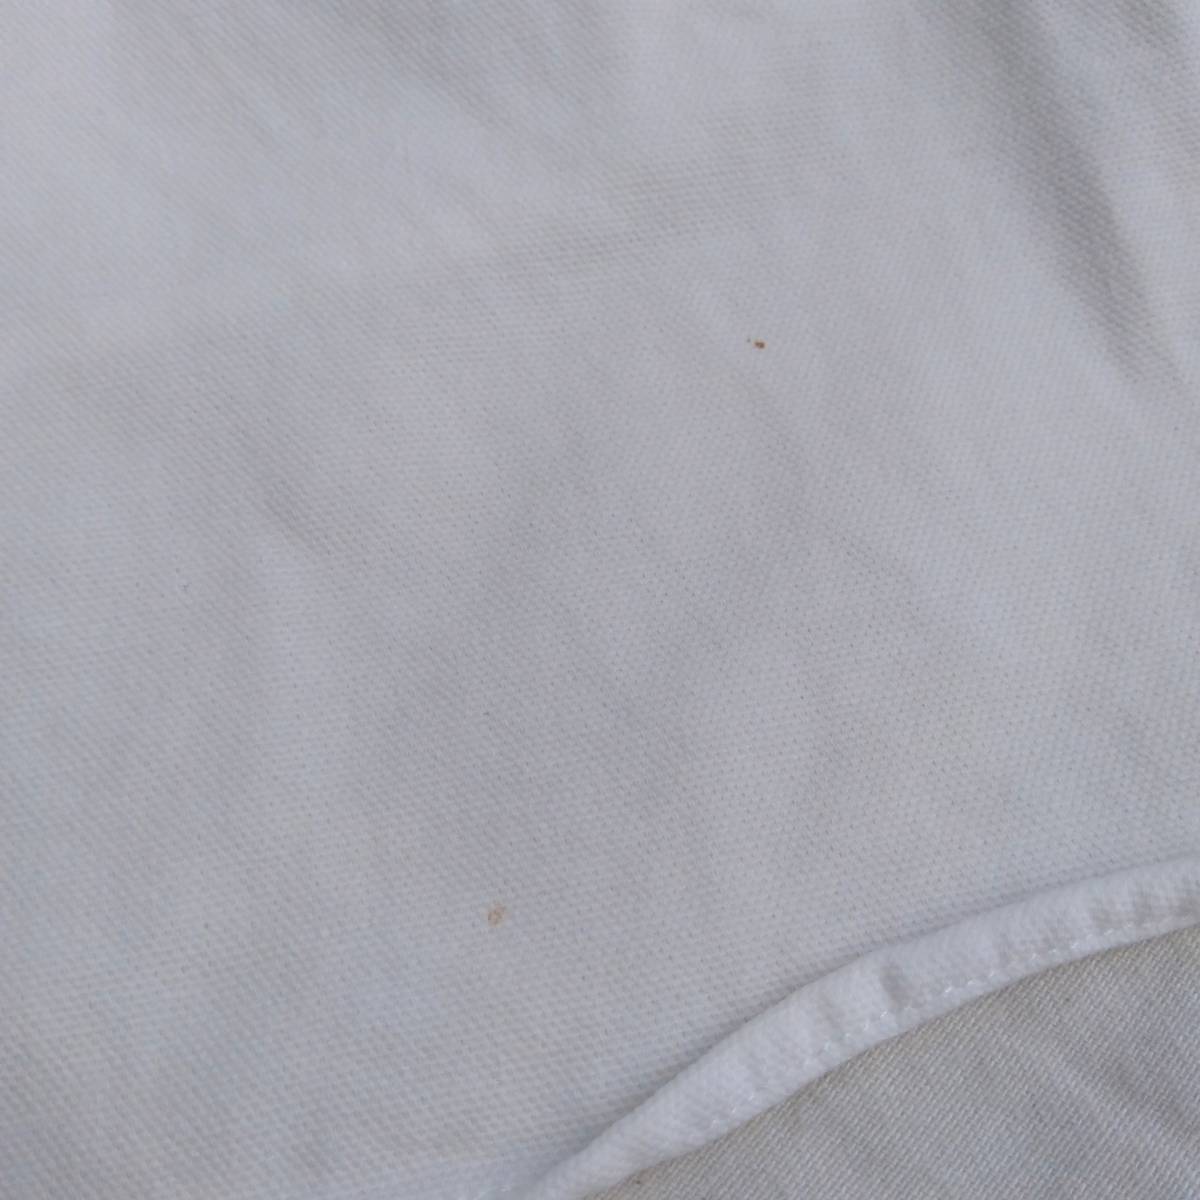 [90s] POLO by Ralph Lauren RL-93 Polo Ralph Lauren мужской рубашка с длинным рукавом белый темно-синий M оригинал Vintage б/у одежда магазин квитанция возможно 